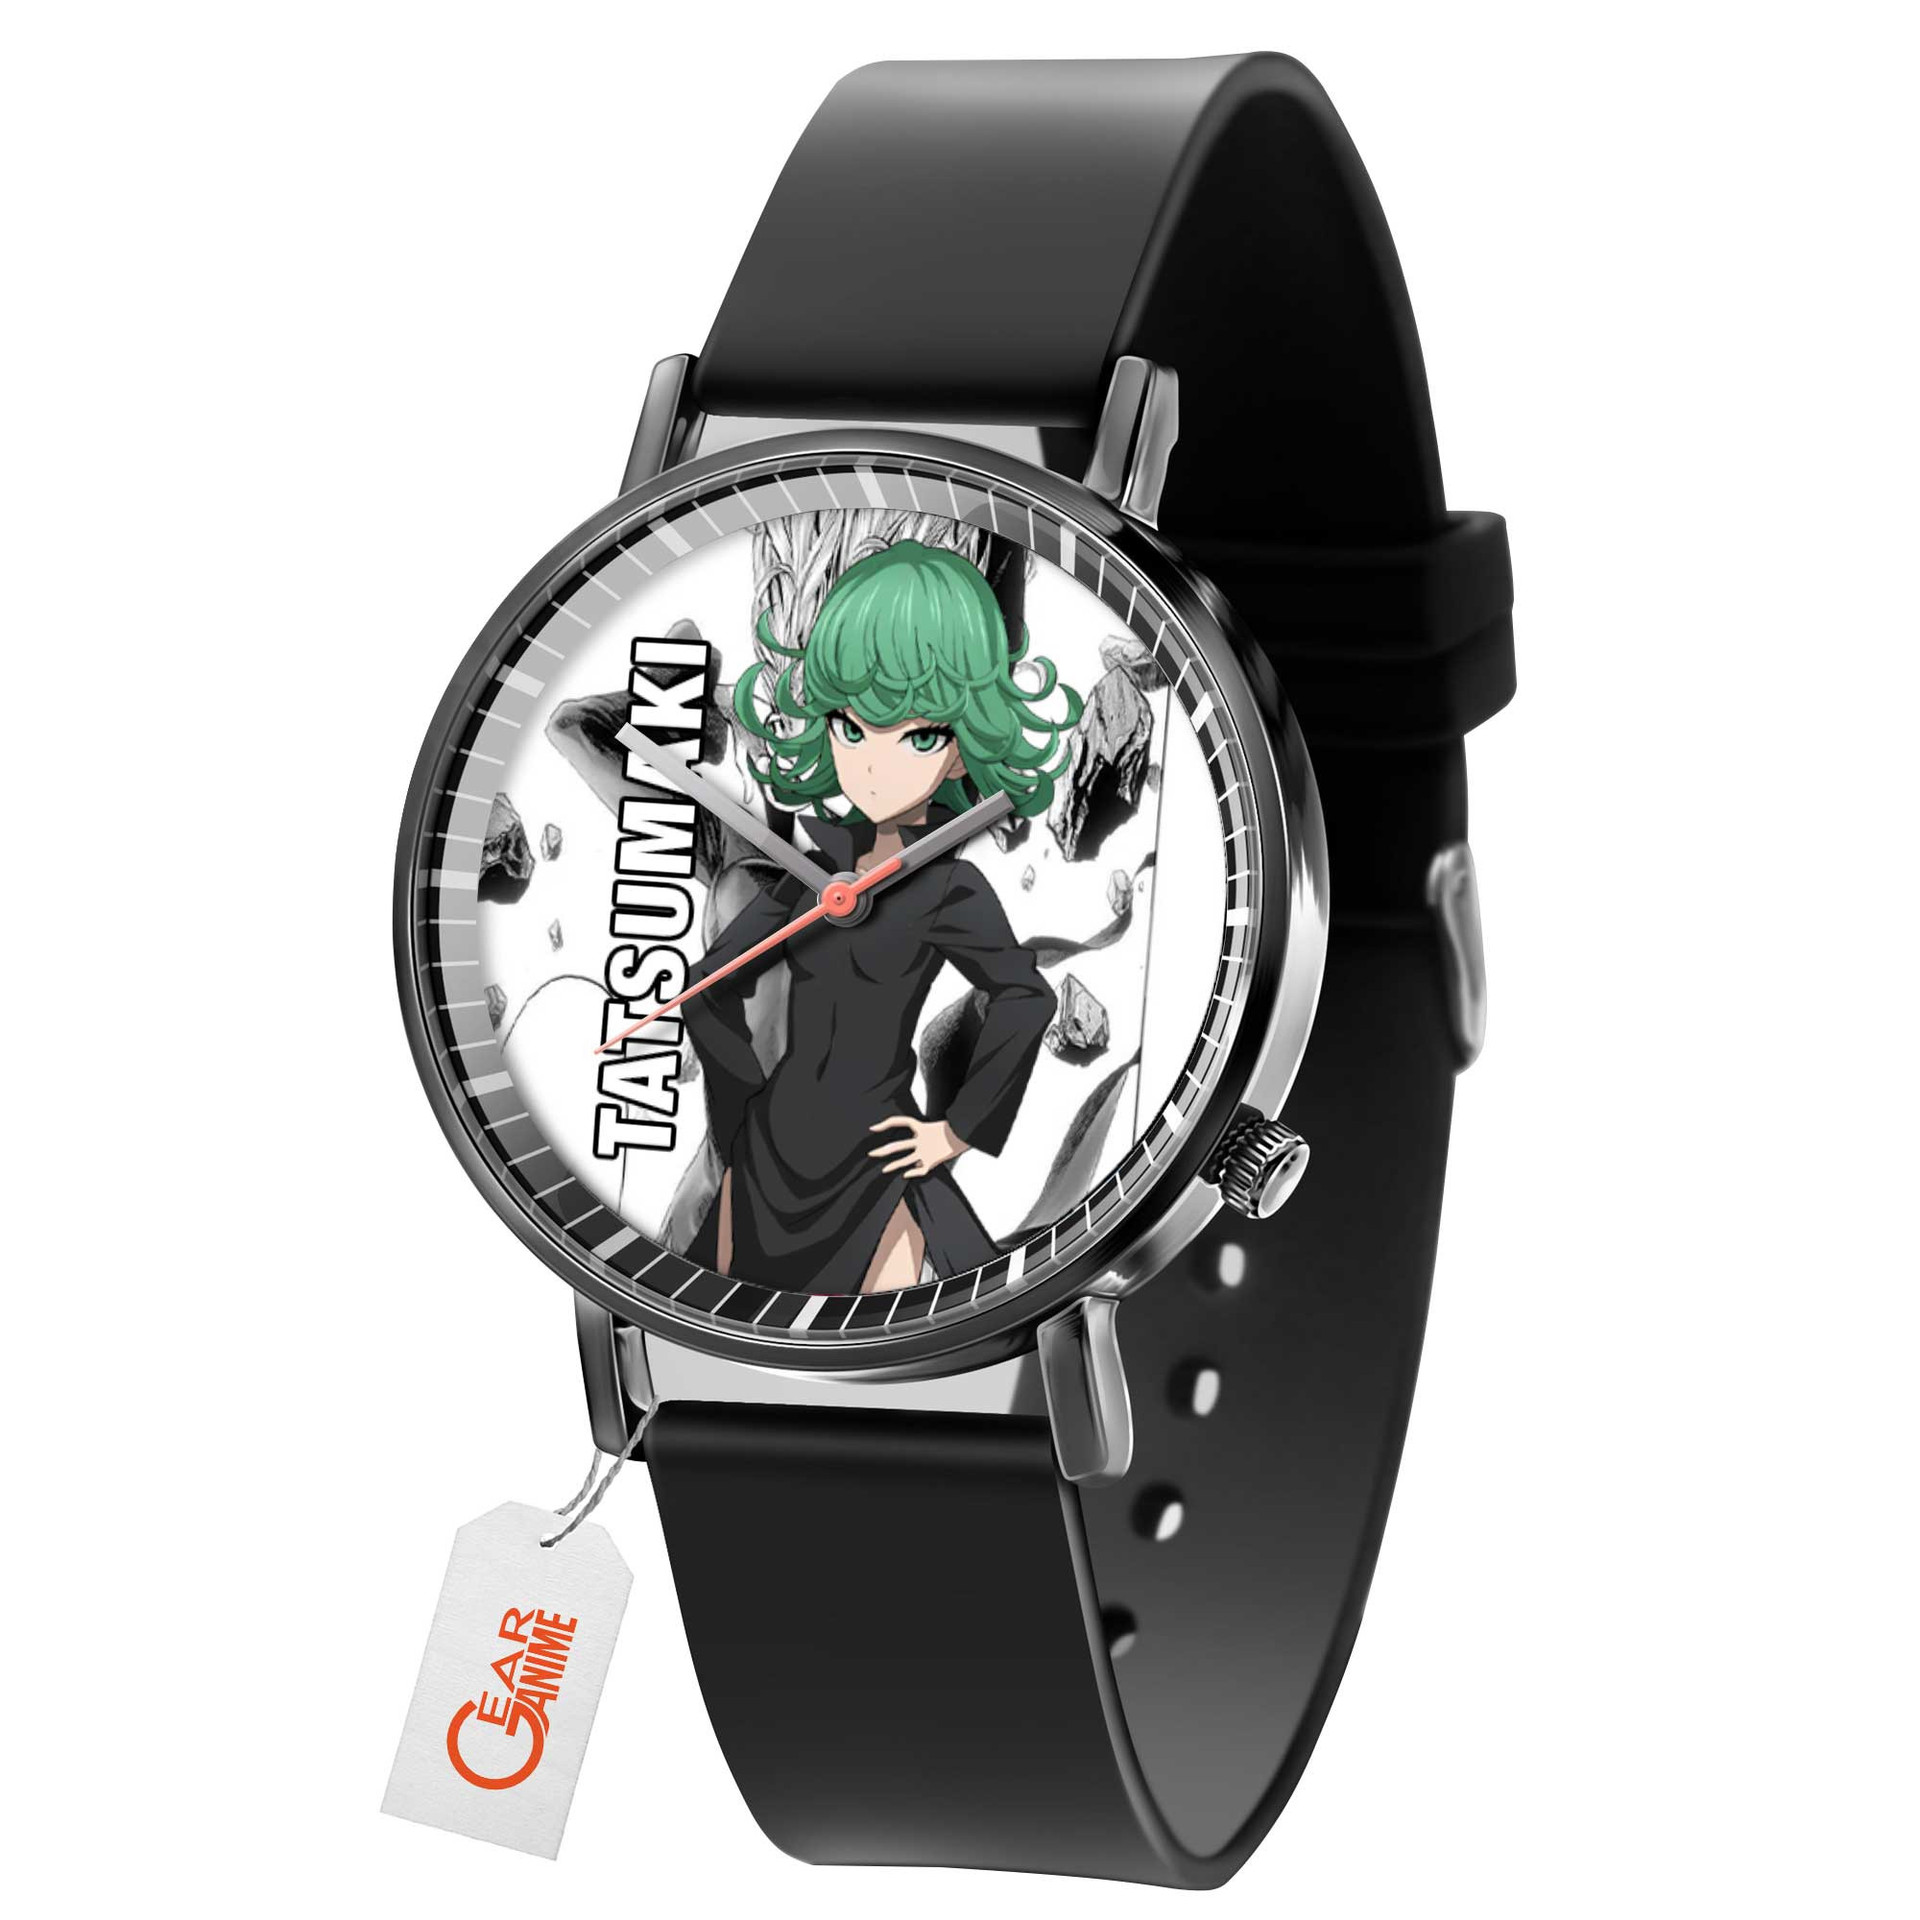 Tatsumaki Leather Band Wrist Watch Personalized-Gear Anime